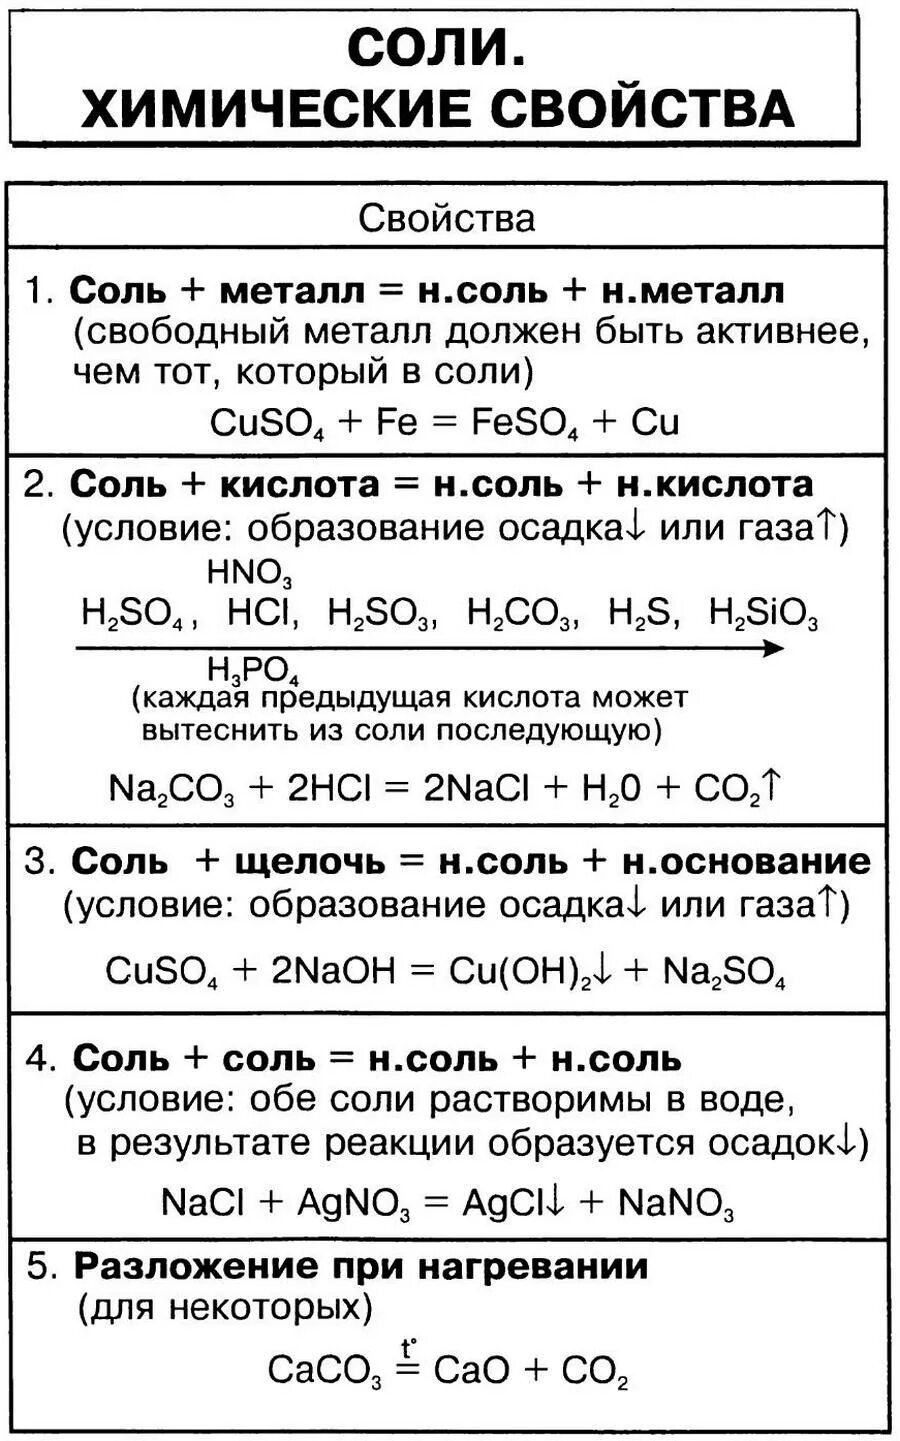 Хим реакции солей. Химические свойства солей 8 класс химия таблица. Свойства солей химия 8 класс. Соли химические свойства 8 класс таблица. Химические свойства солей 8 класс.